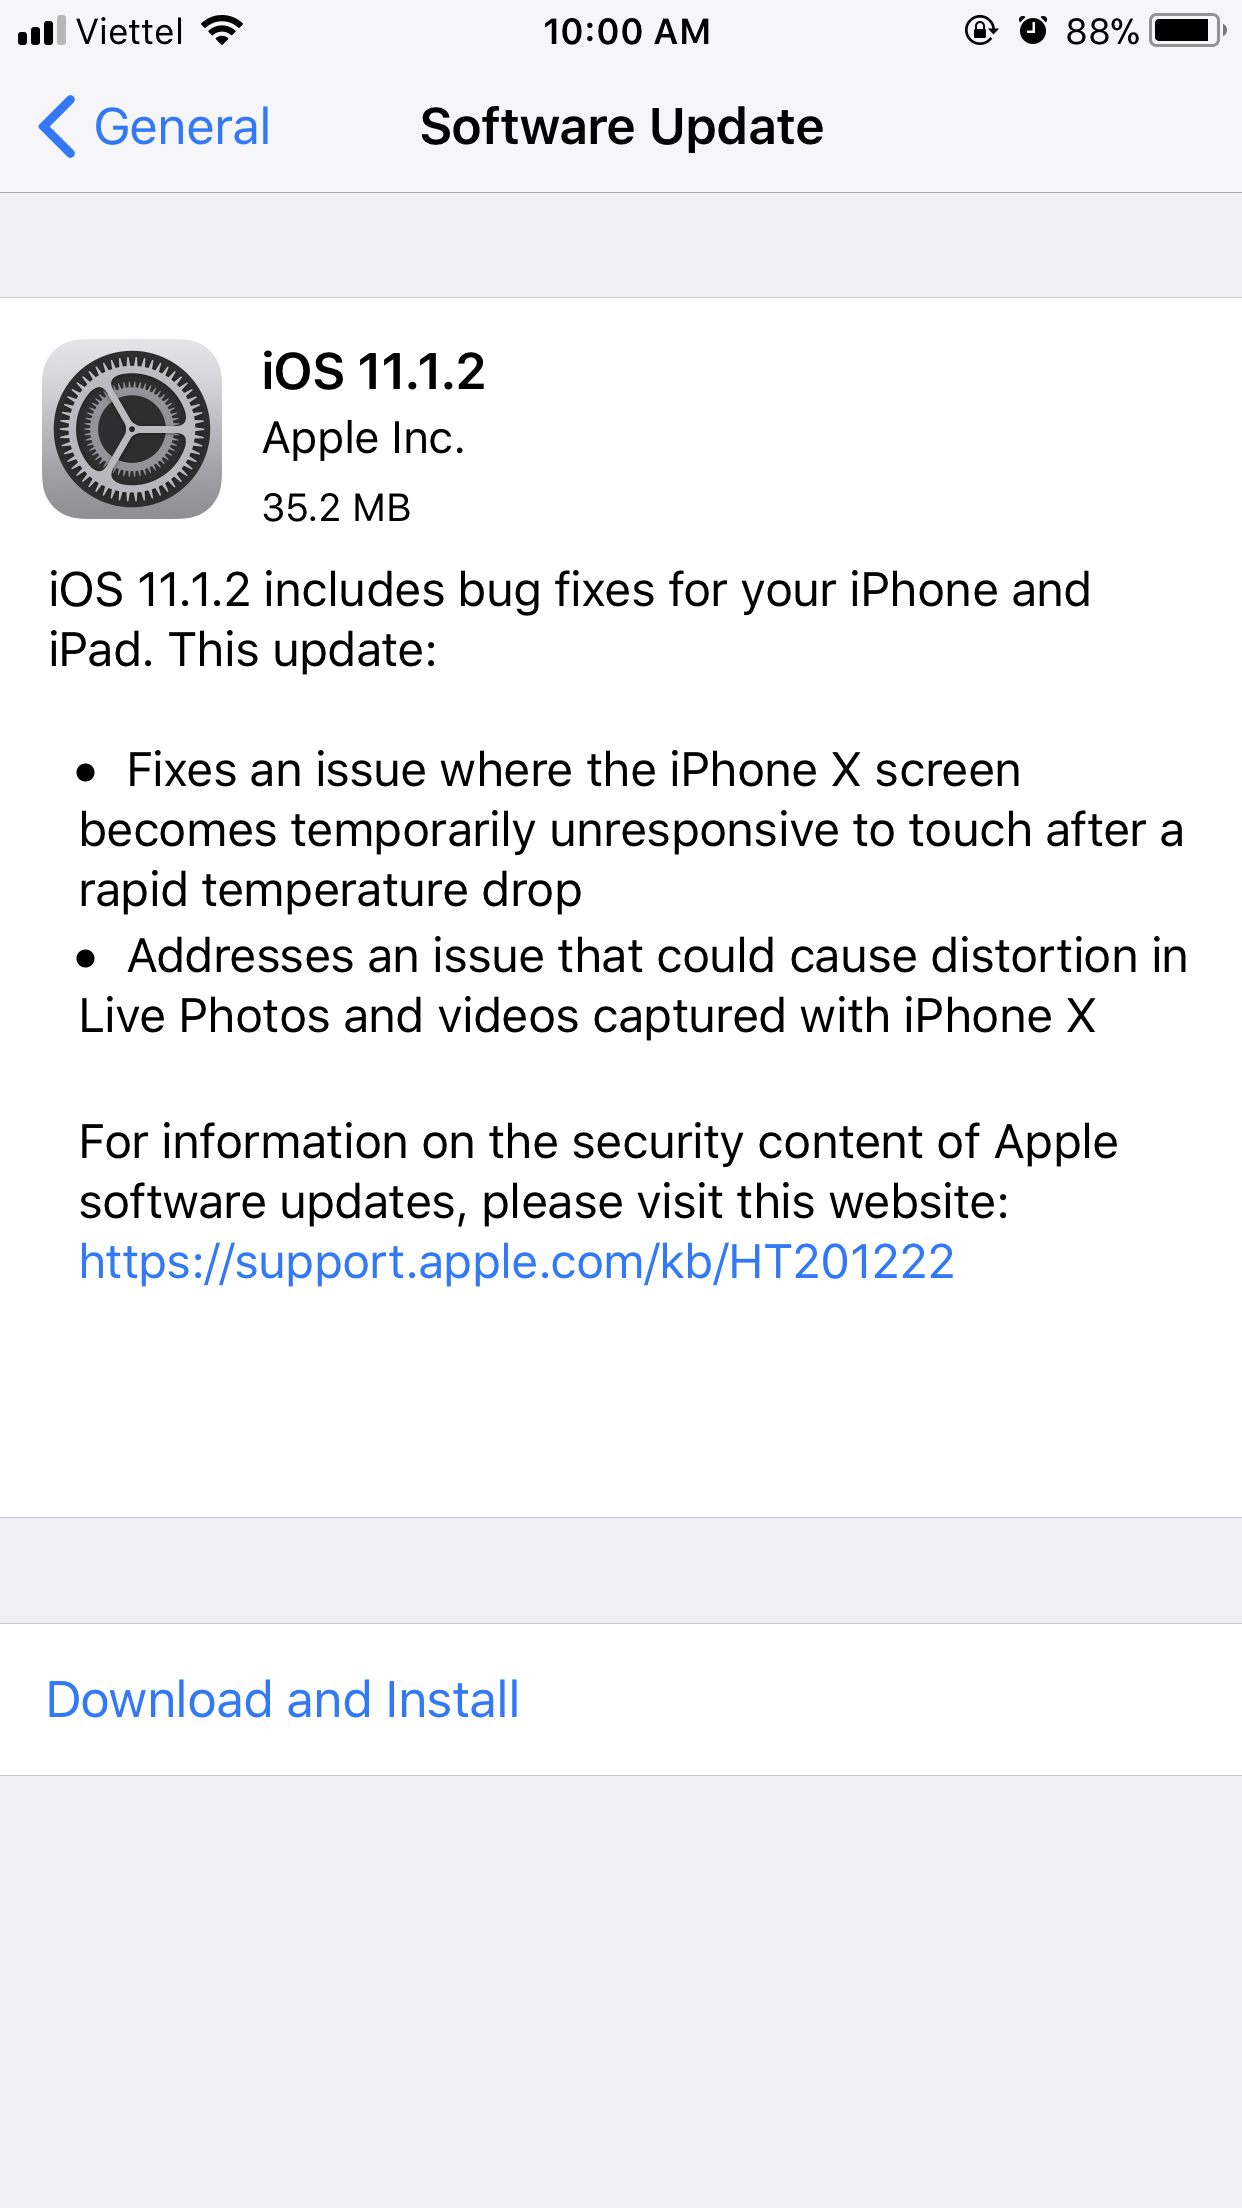 Apple phát hành bản cập nhật iOS 11.1.2, sửa một số lỗi trên iPhone X